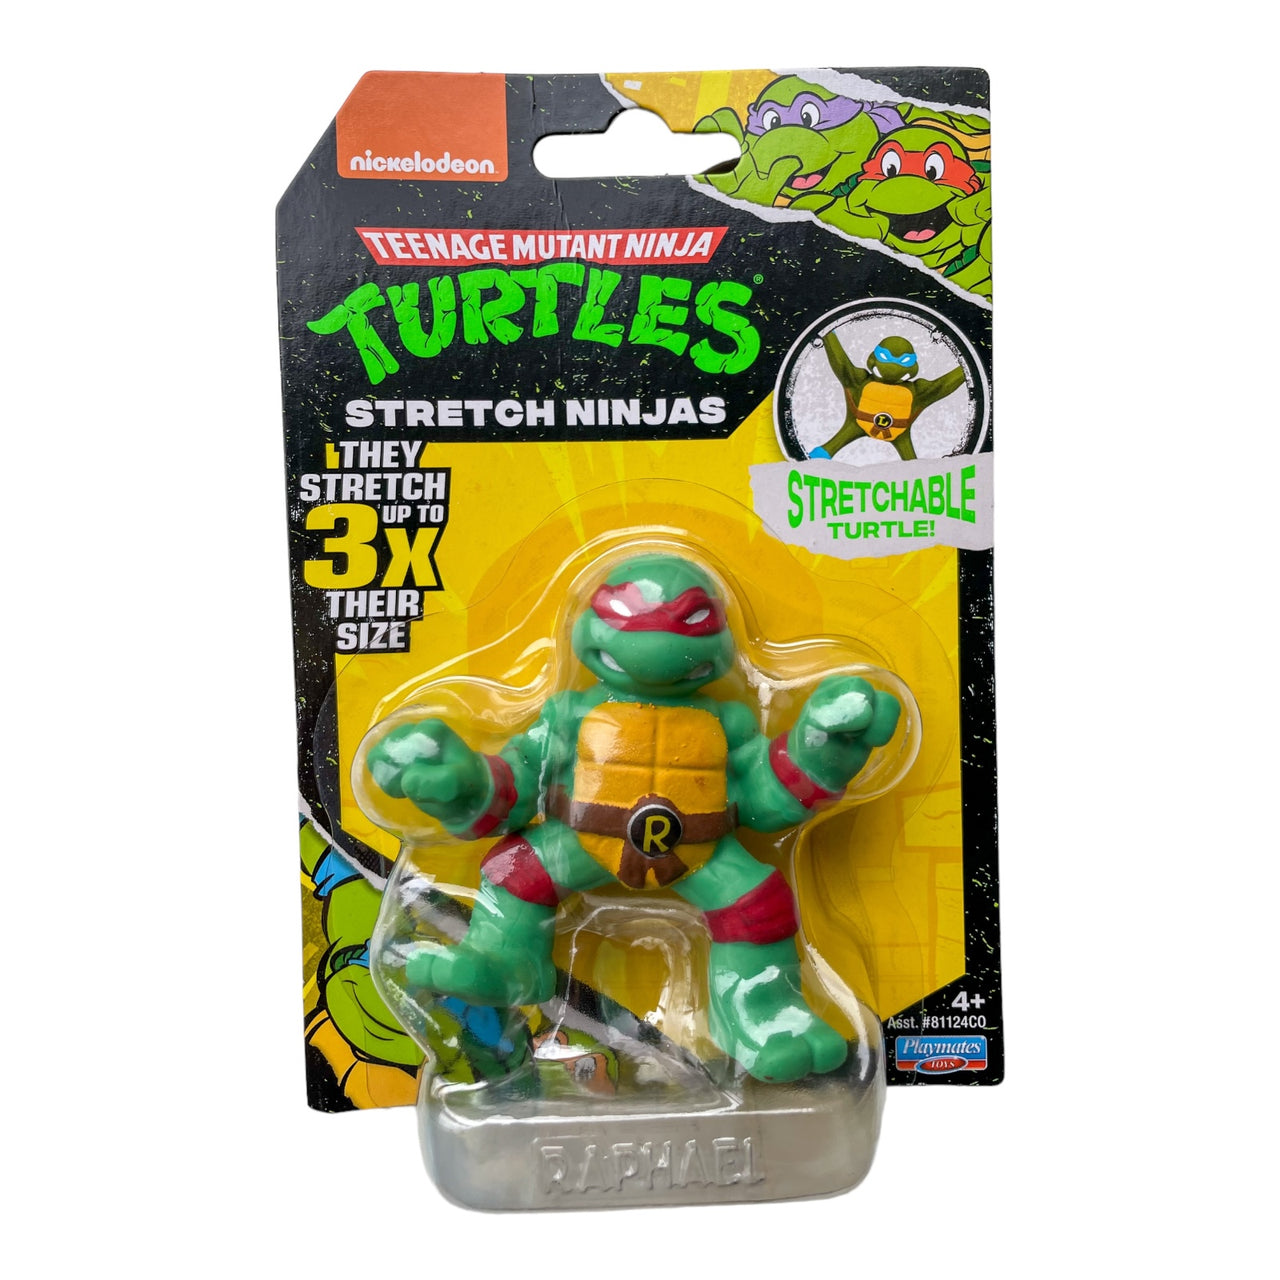 Mini Stretch Teenage Mutant Ninja Turtles Assortment Teenage Mutant Ninja Turtles